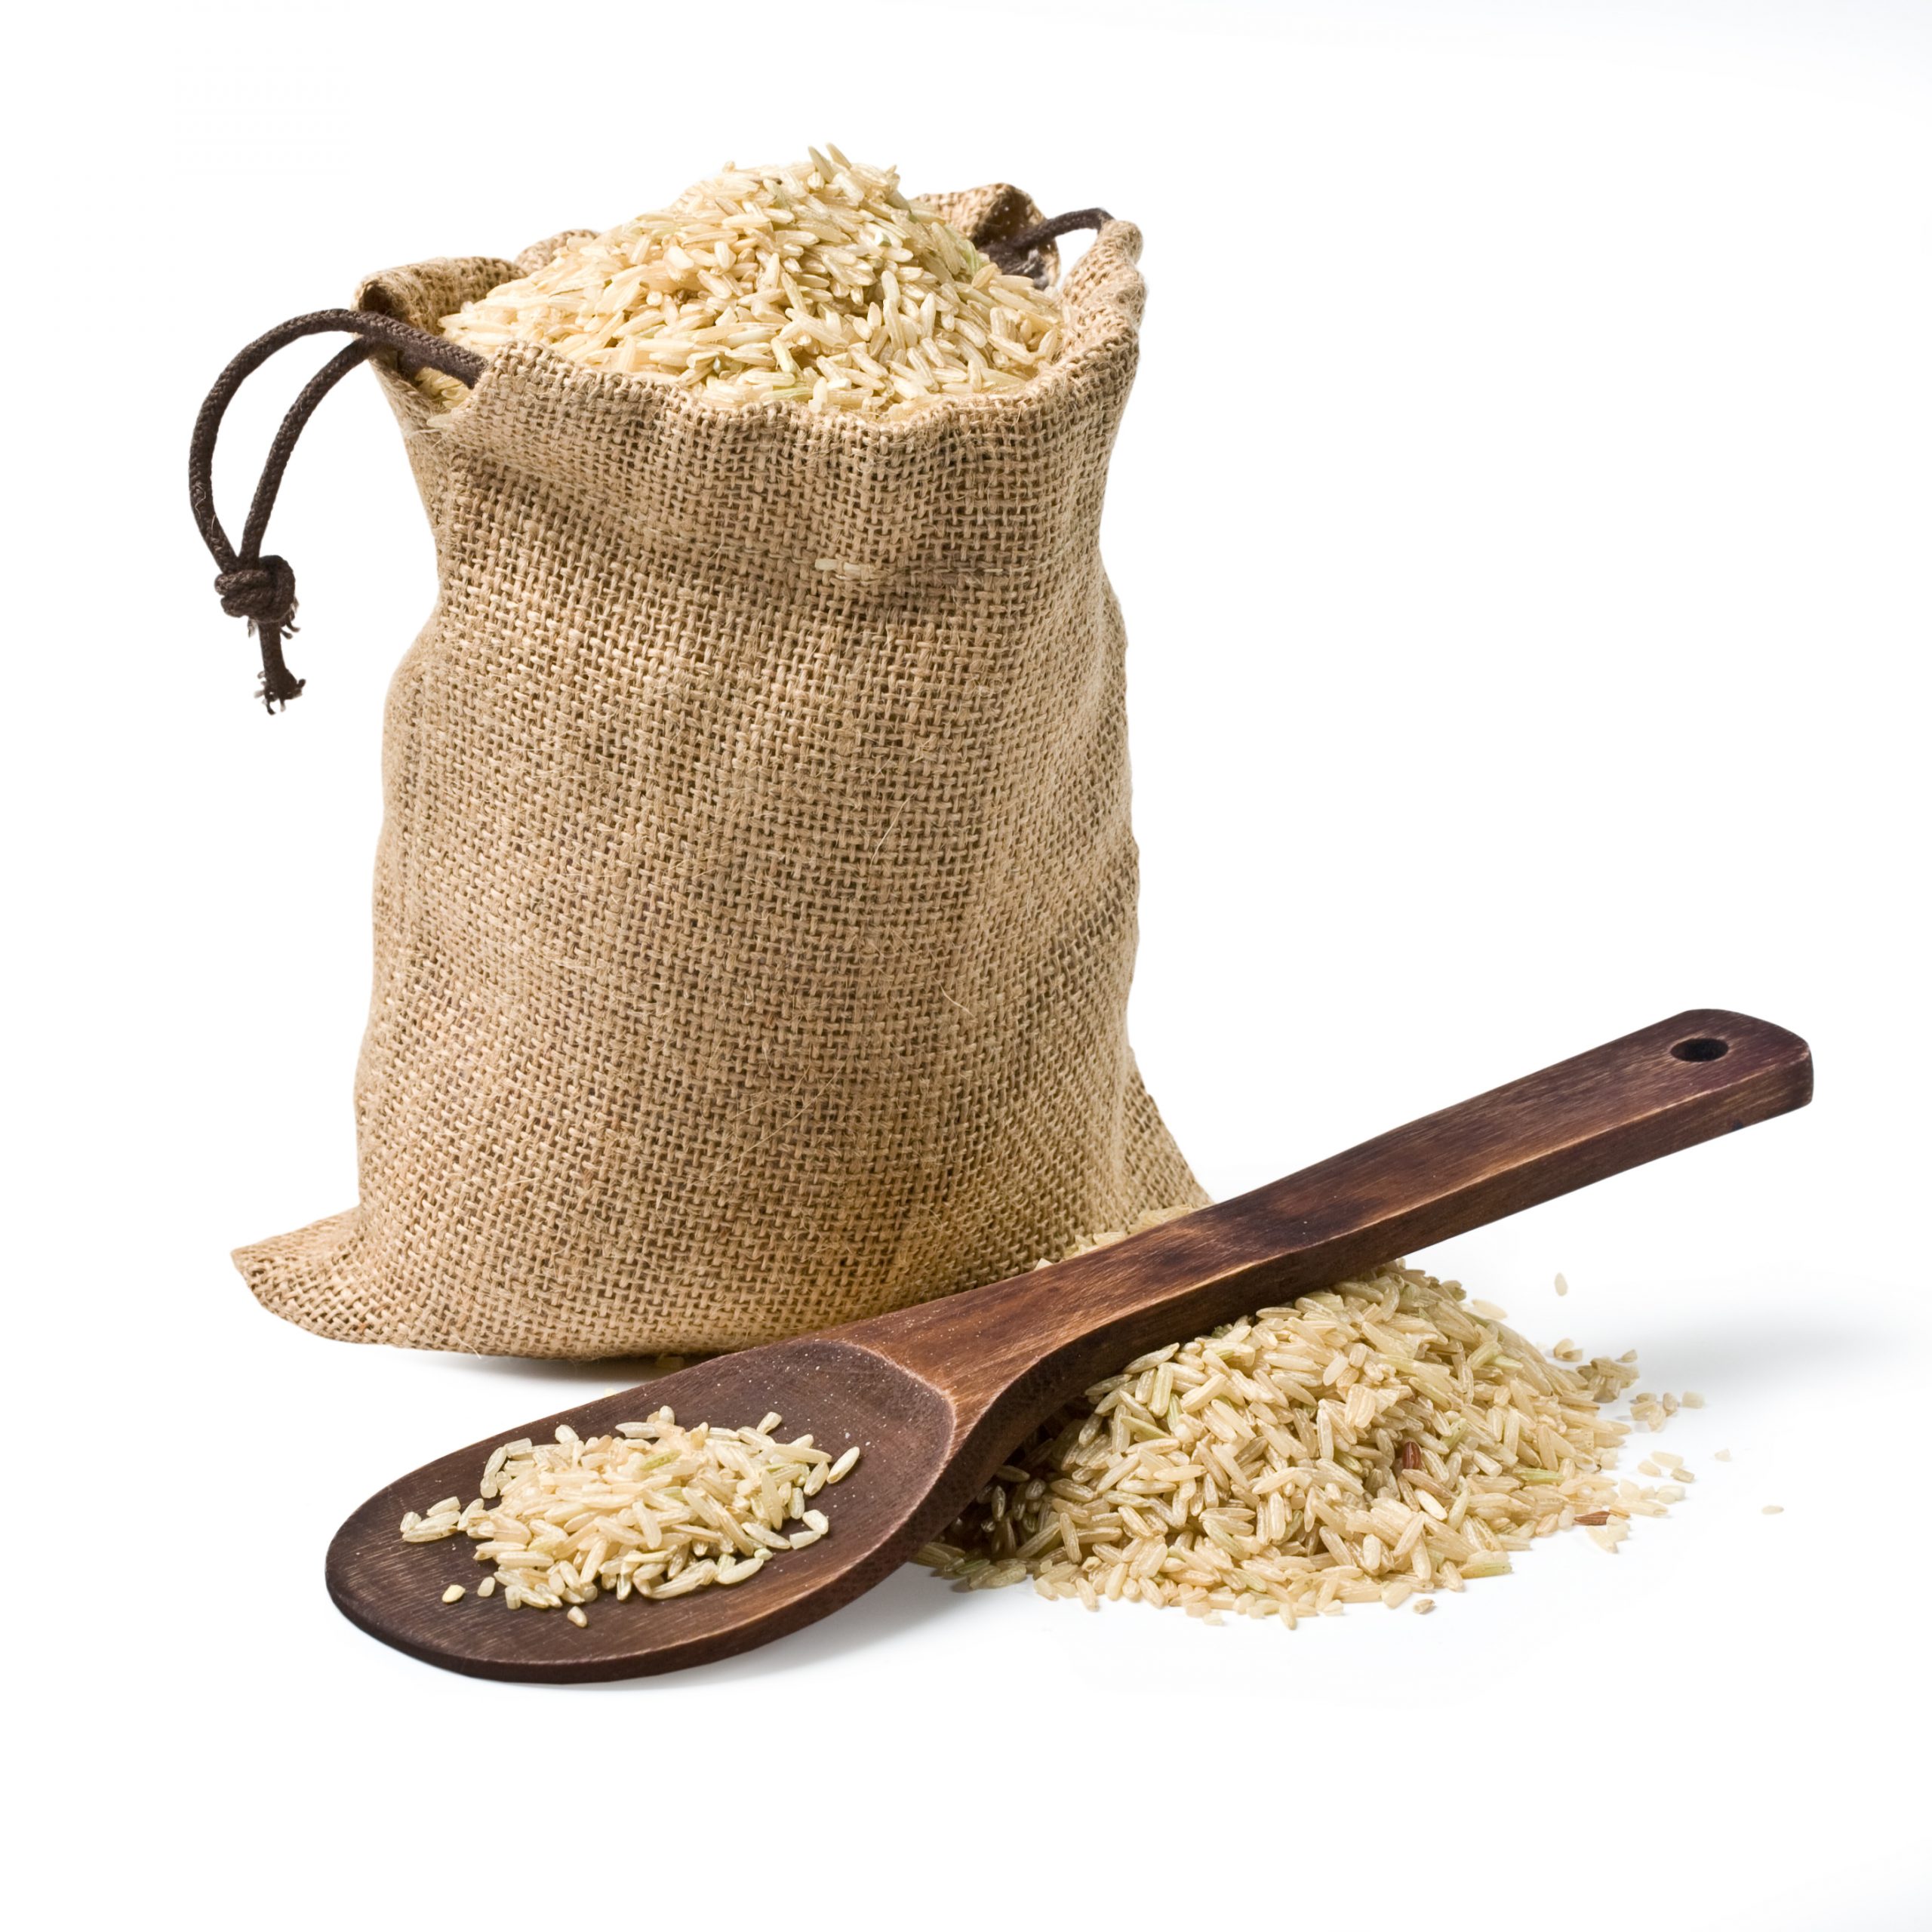 Come cuocere il riso integrale: una guida utile